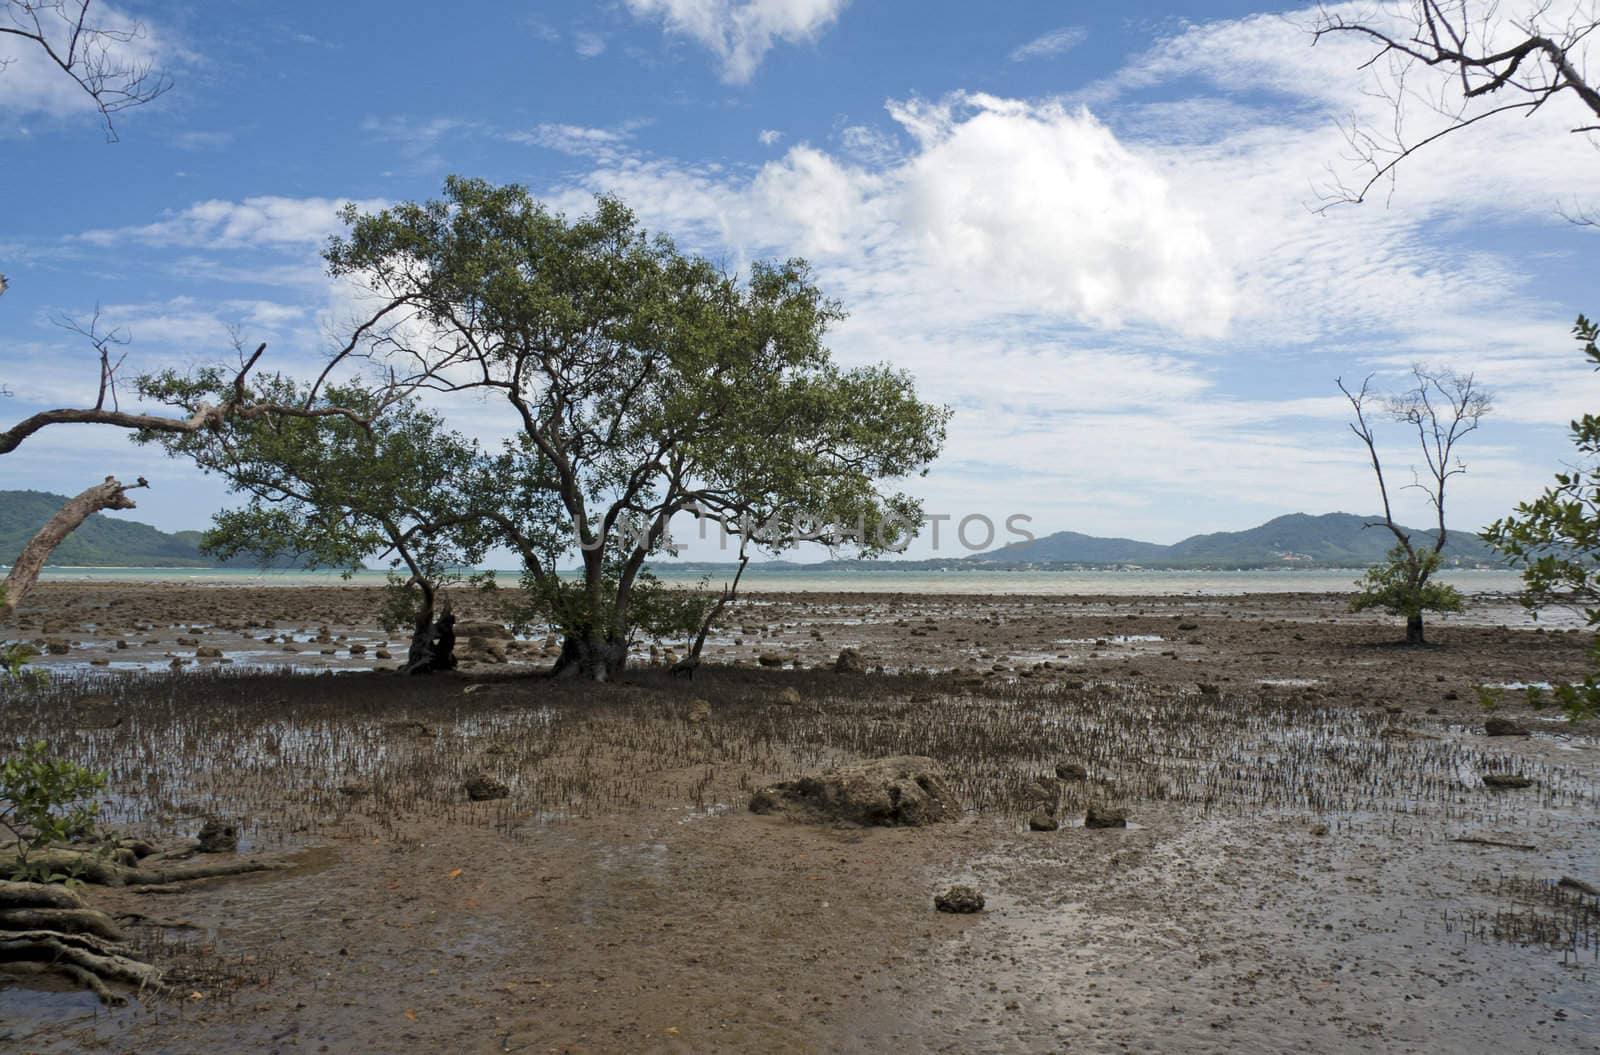 Mangroves at low tide, Chalong Bay, Phuket